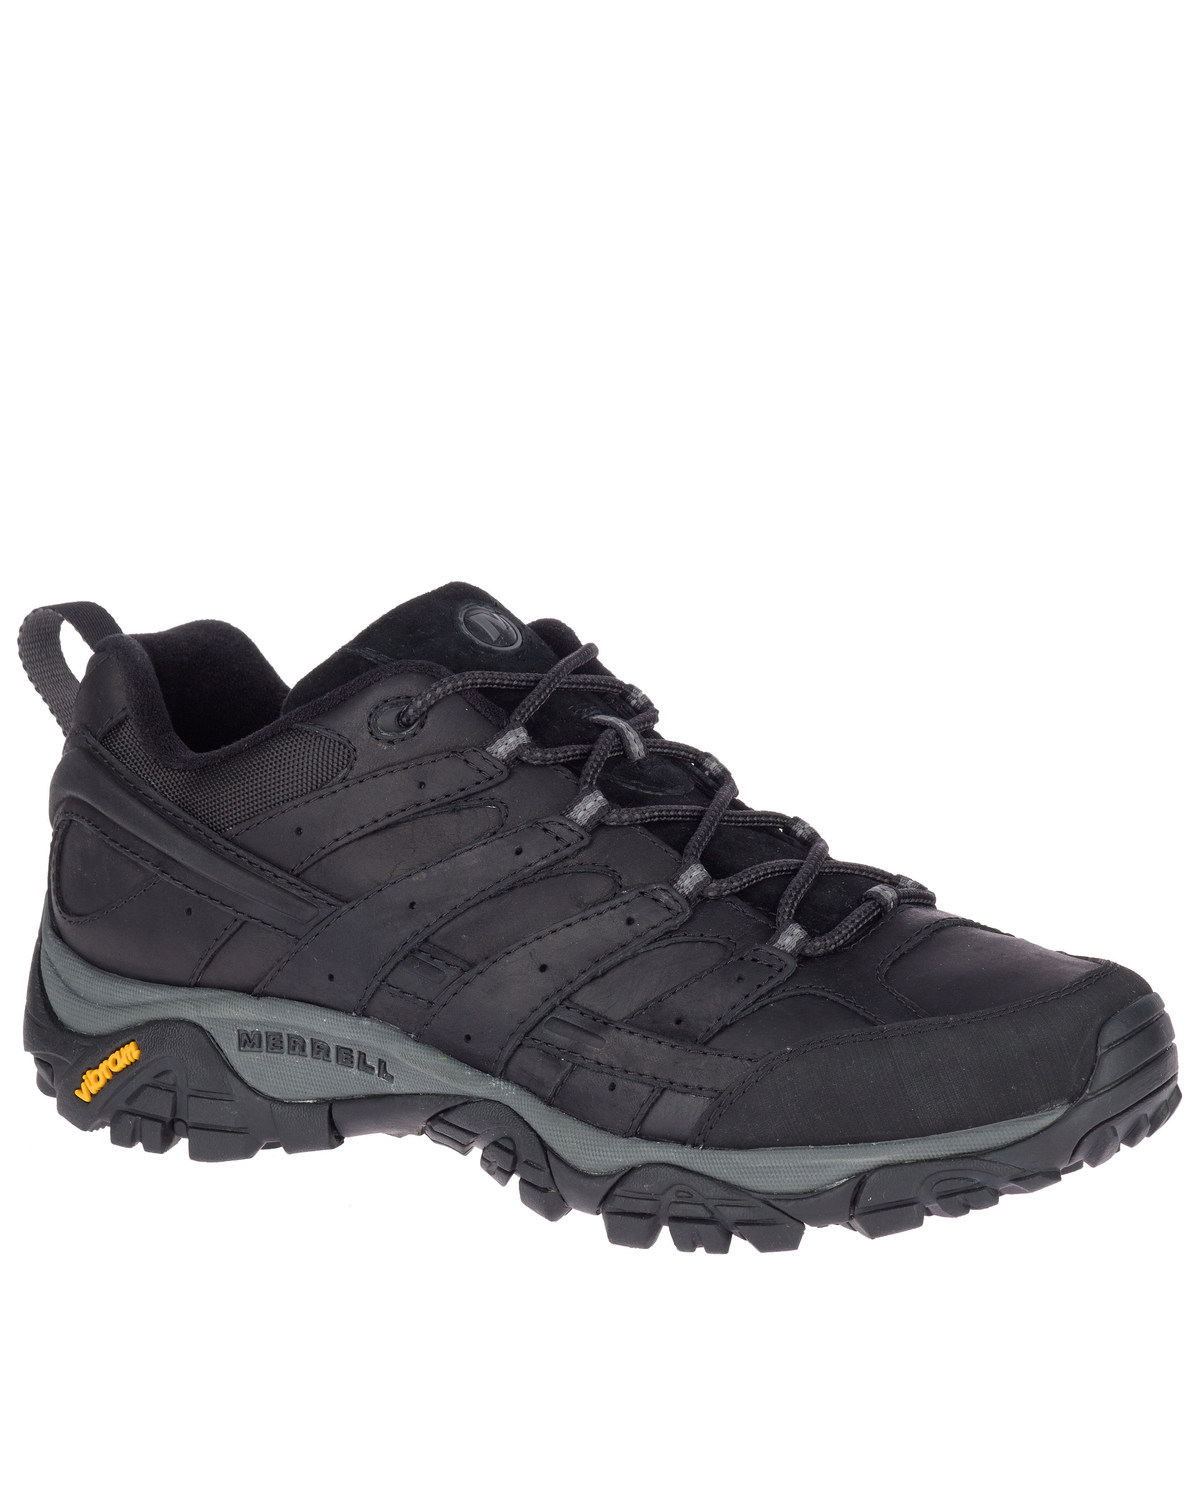 Merrell Men's Black MOAB 2 Prime Hiking Shoes - Soft Toe